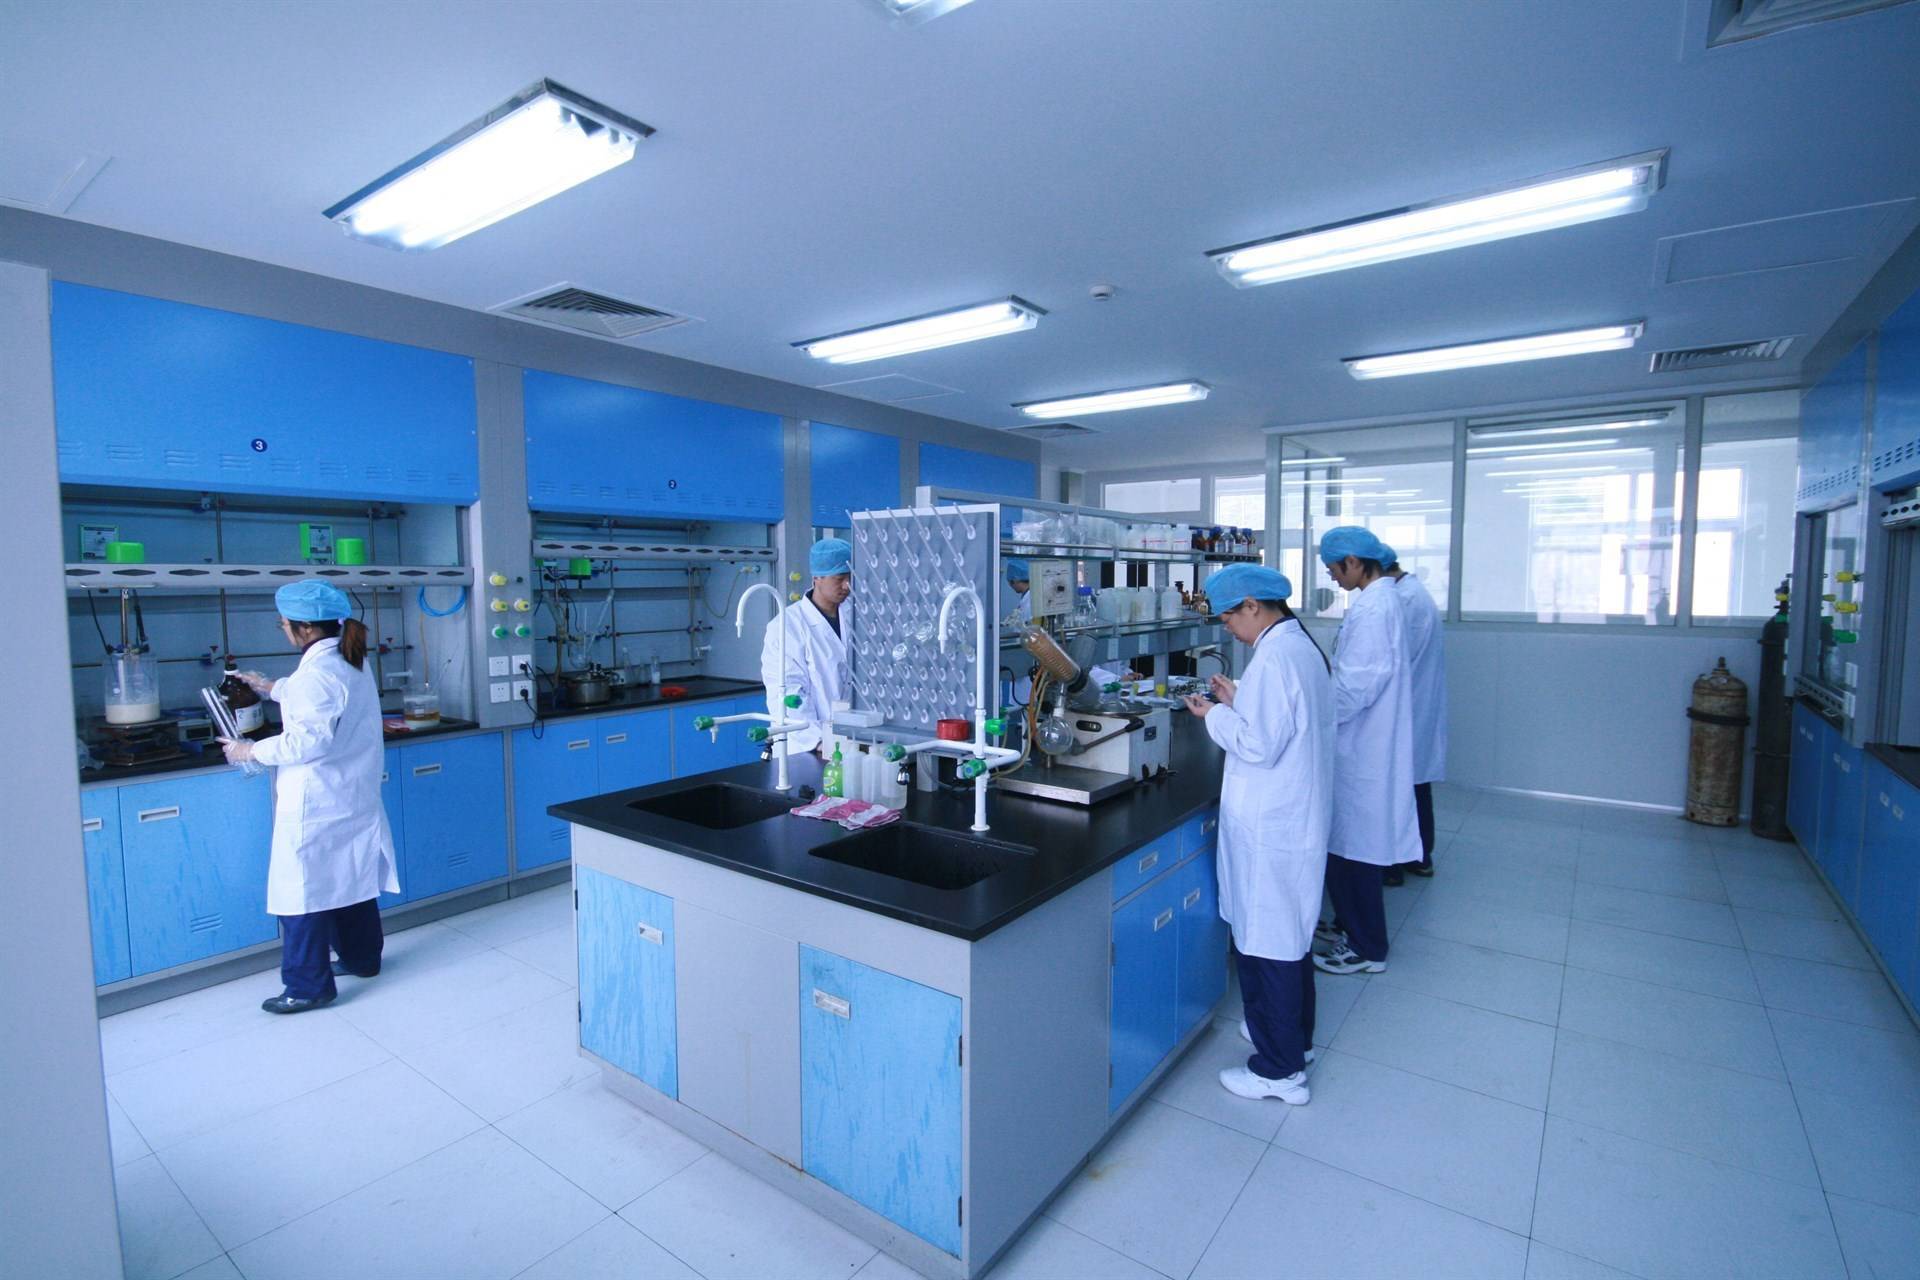 002099)位于浙江台州,是一家生产特色原料药,制剂以及精细化学品